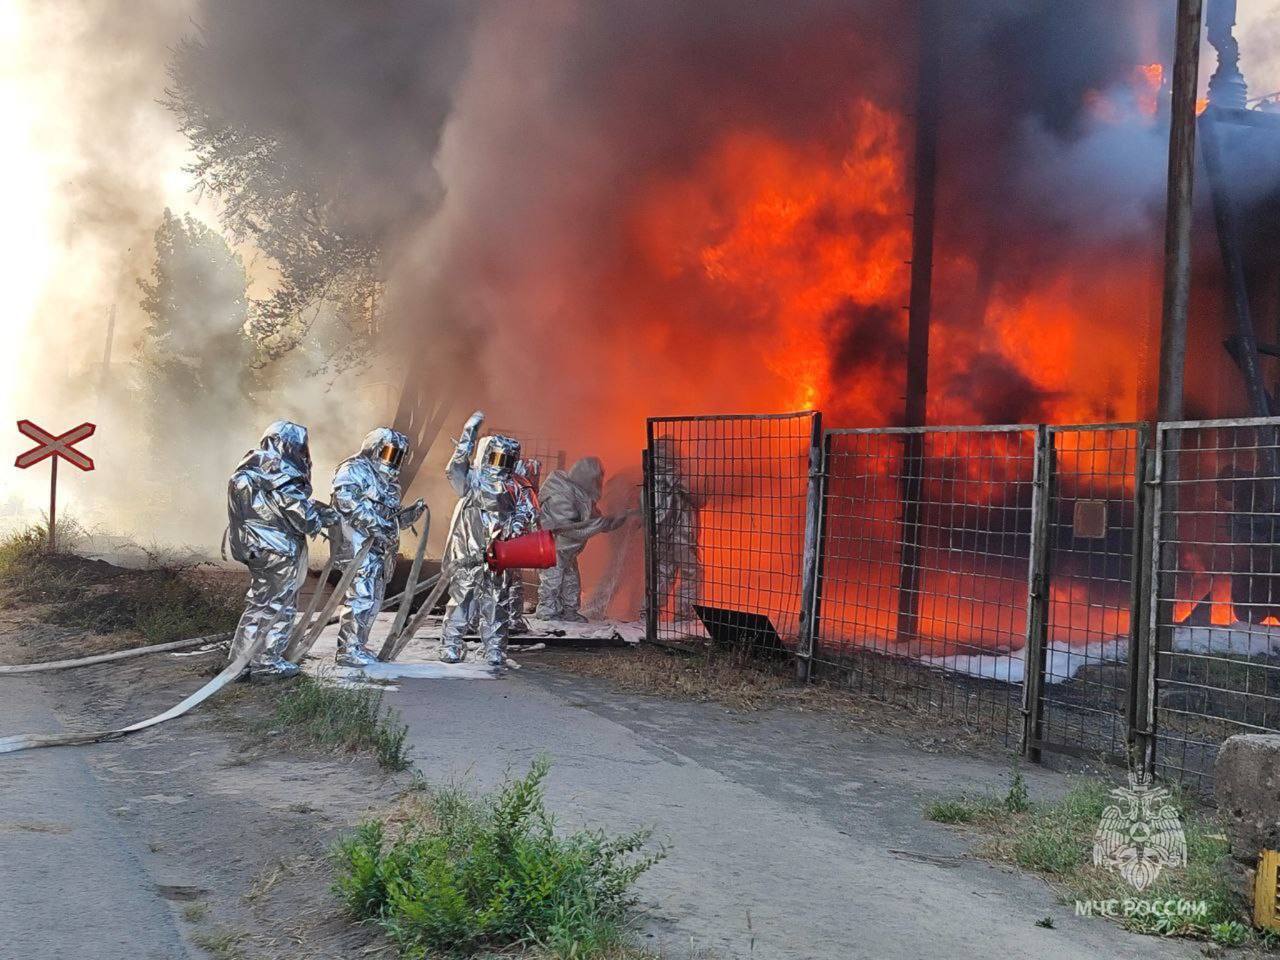 В Волгограде вспыхнул мощный пожар на заводе "Красный Октябрь", поднялась стена огня и дыма. Видео